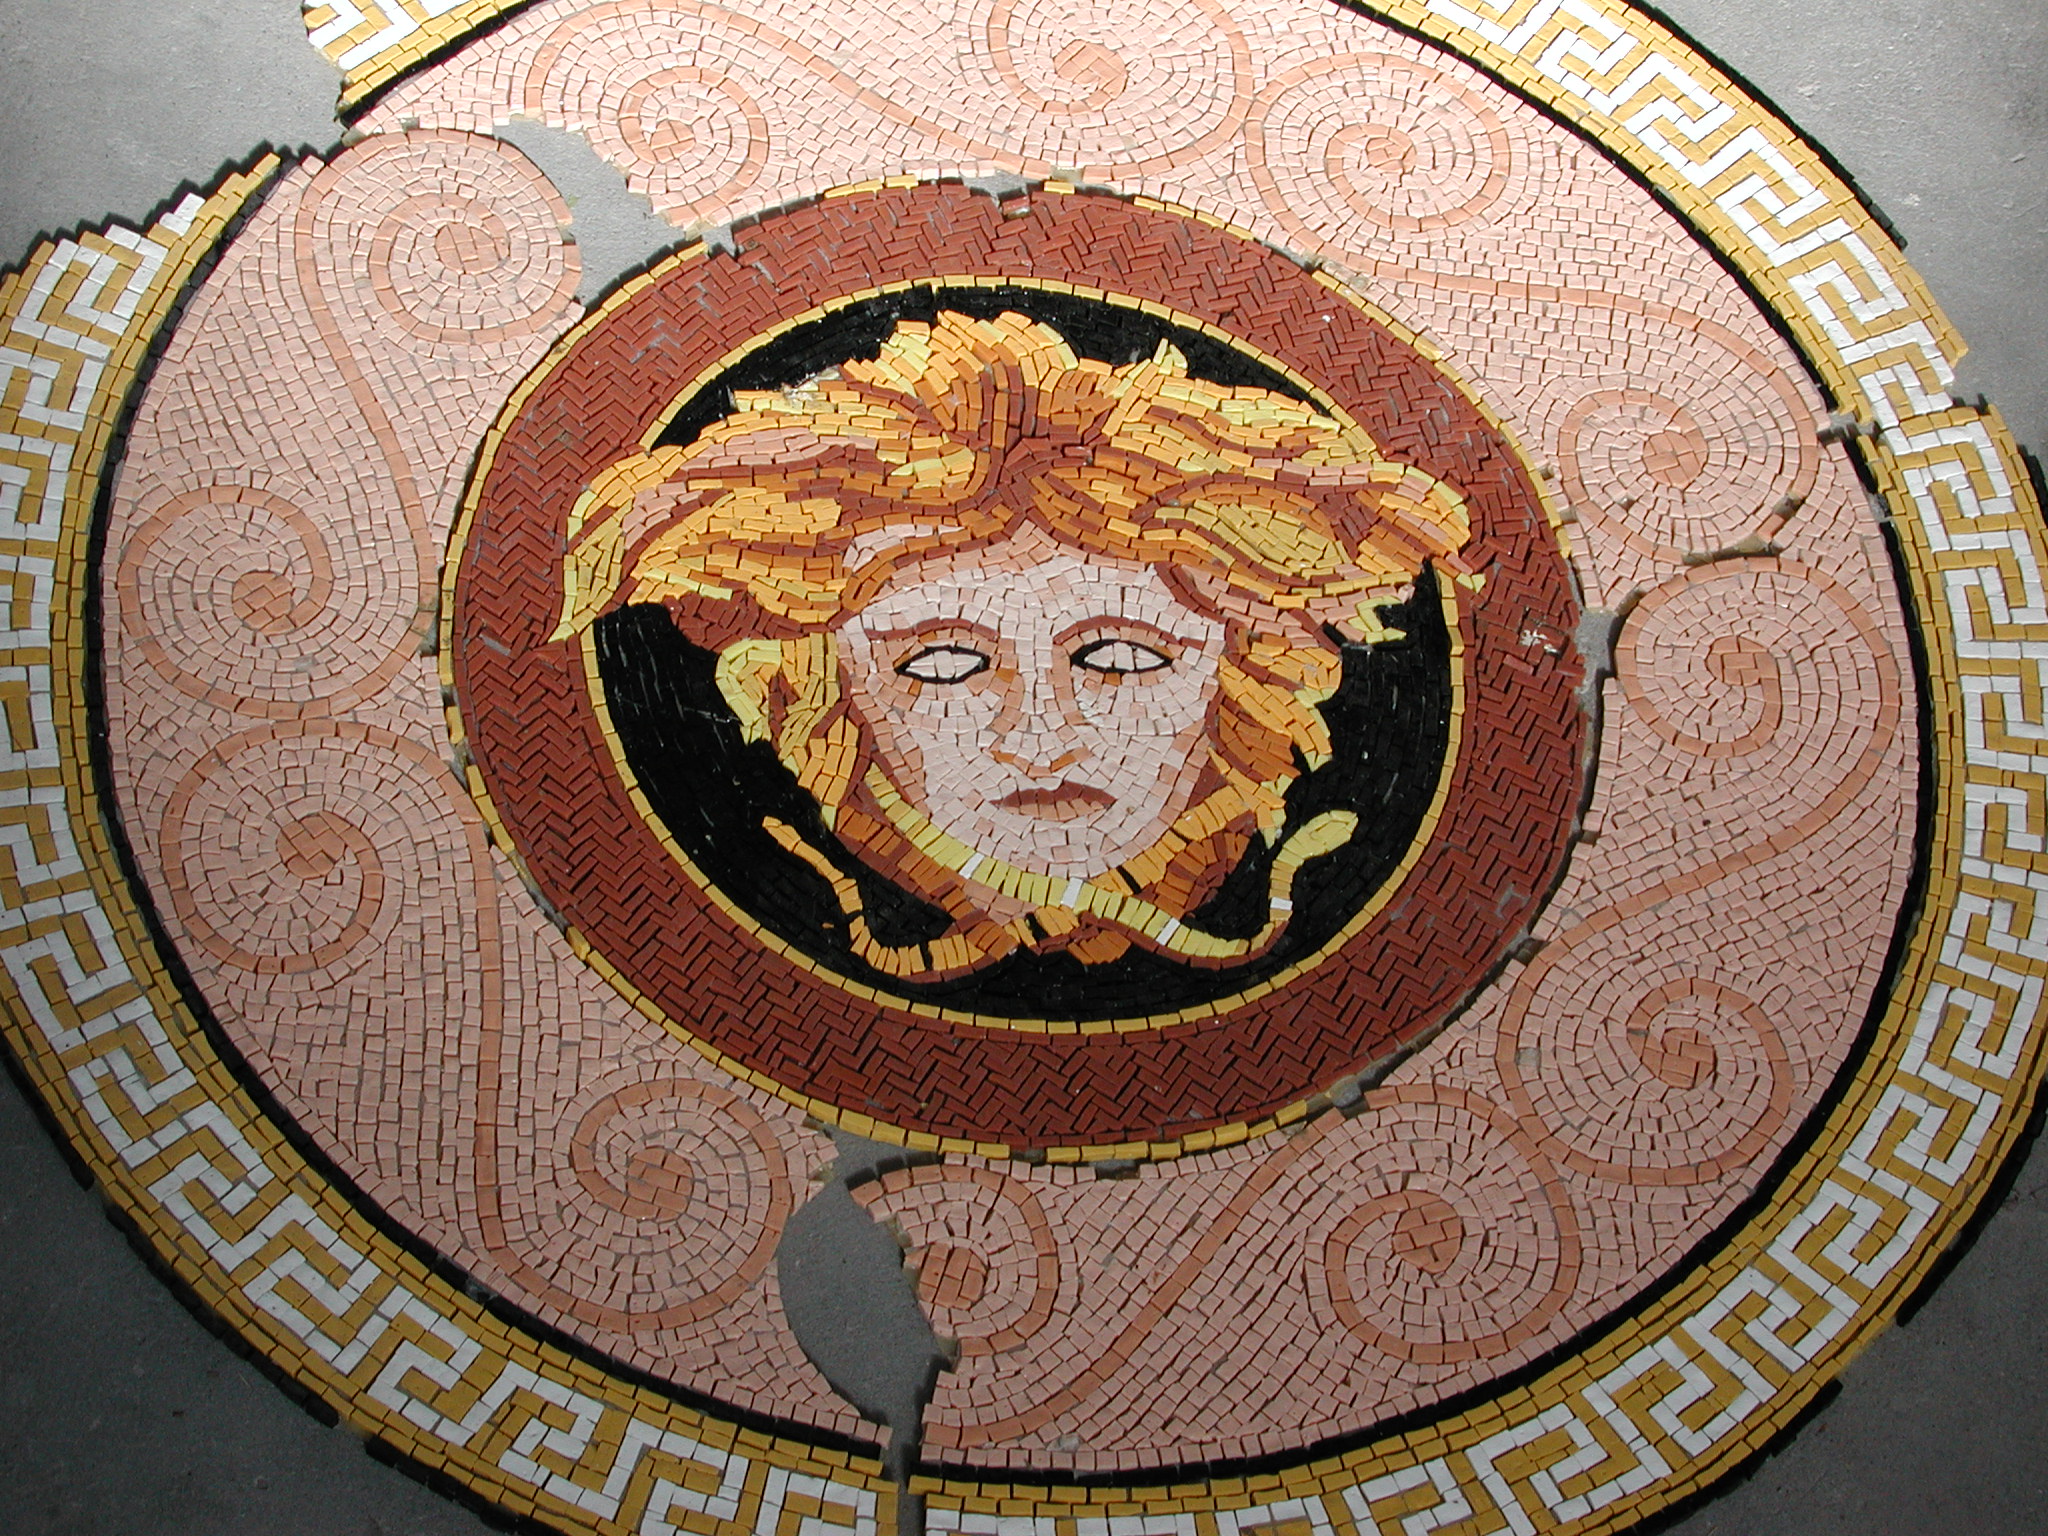 Medusa Head mosaic art